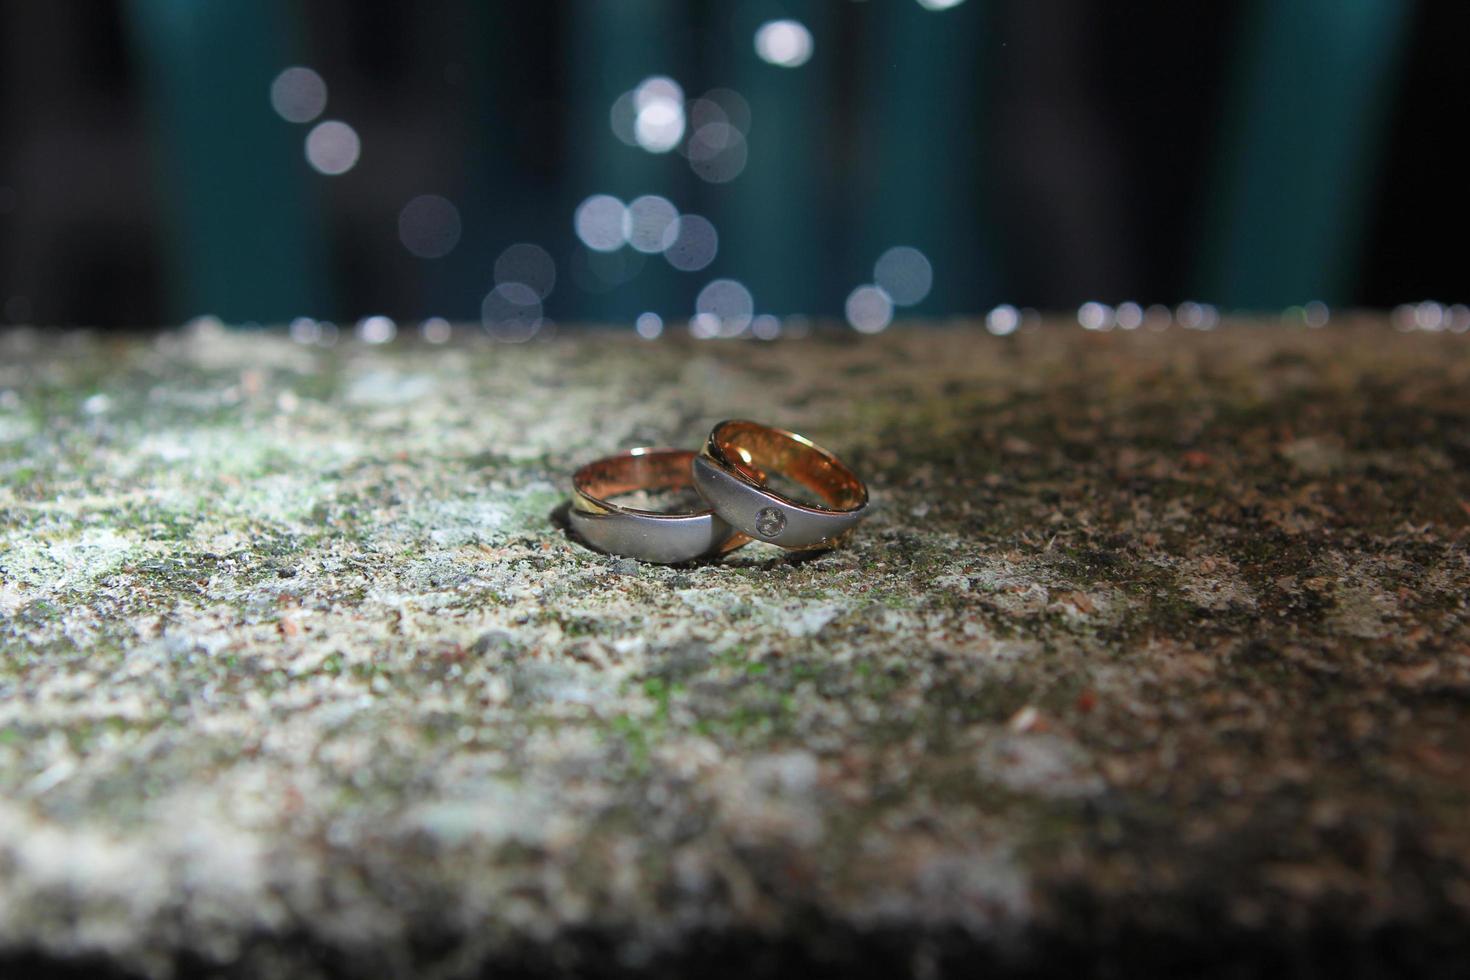 ein Paar Eheringe auf einem Felsen. Trauringe symbol Liebe Familie. foto